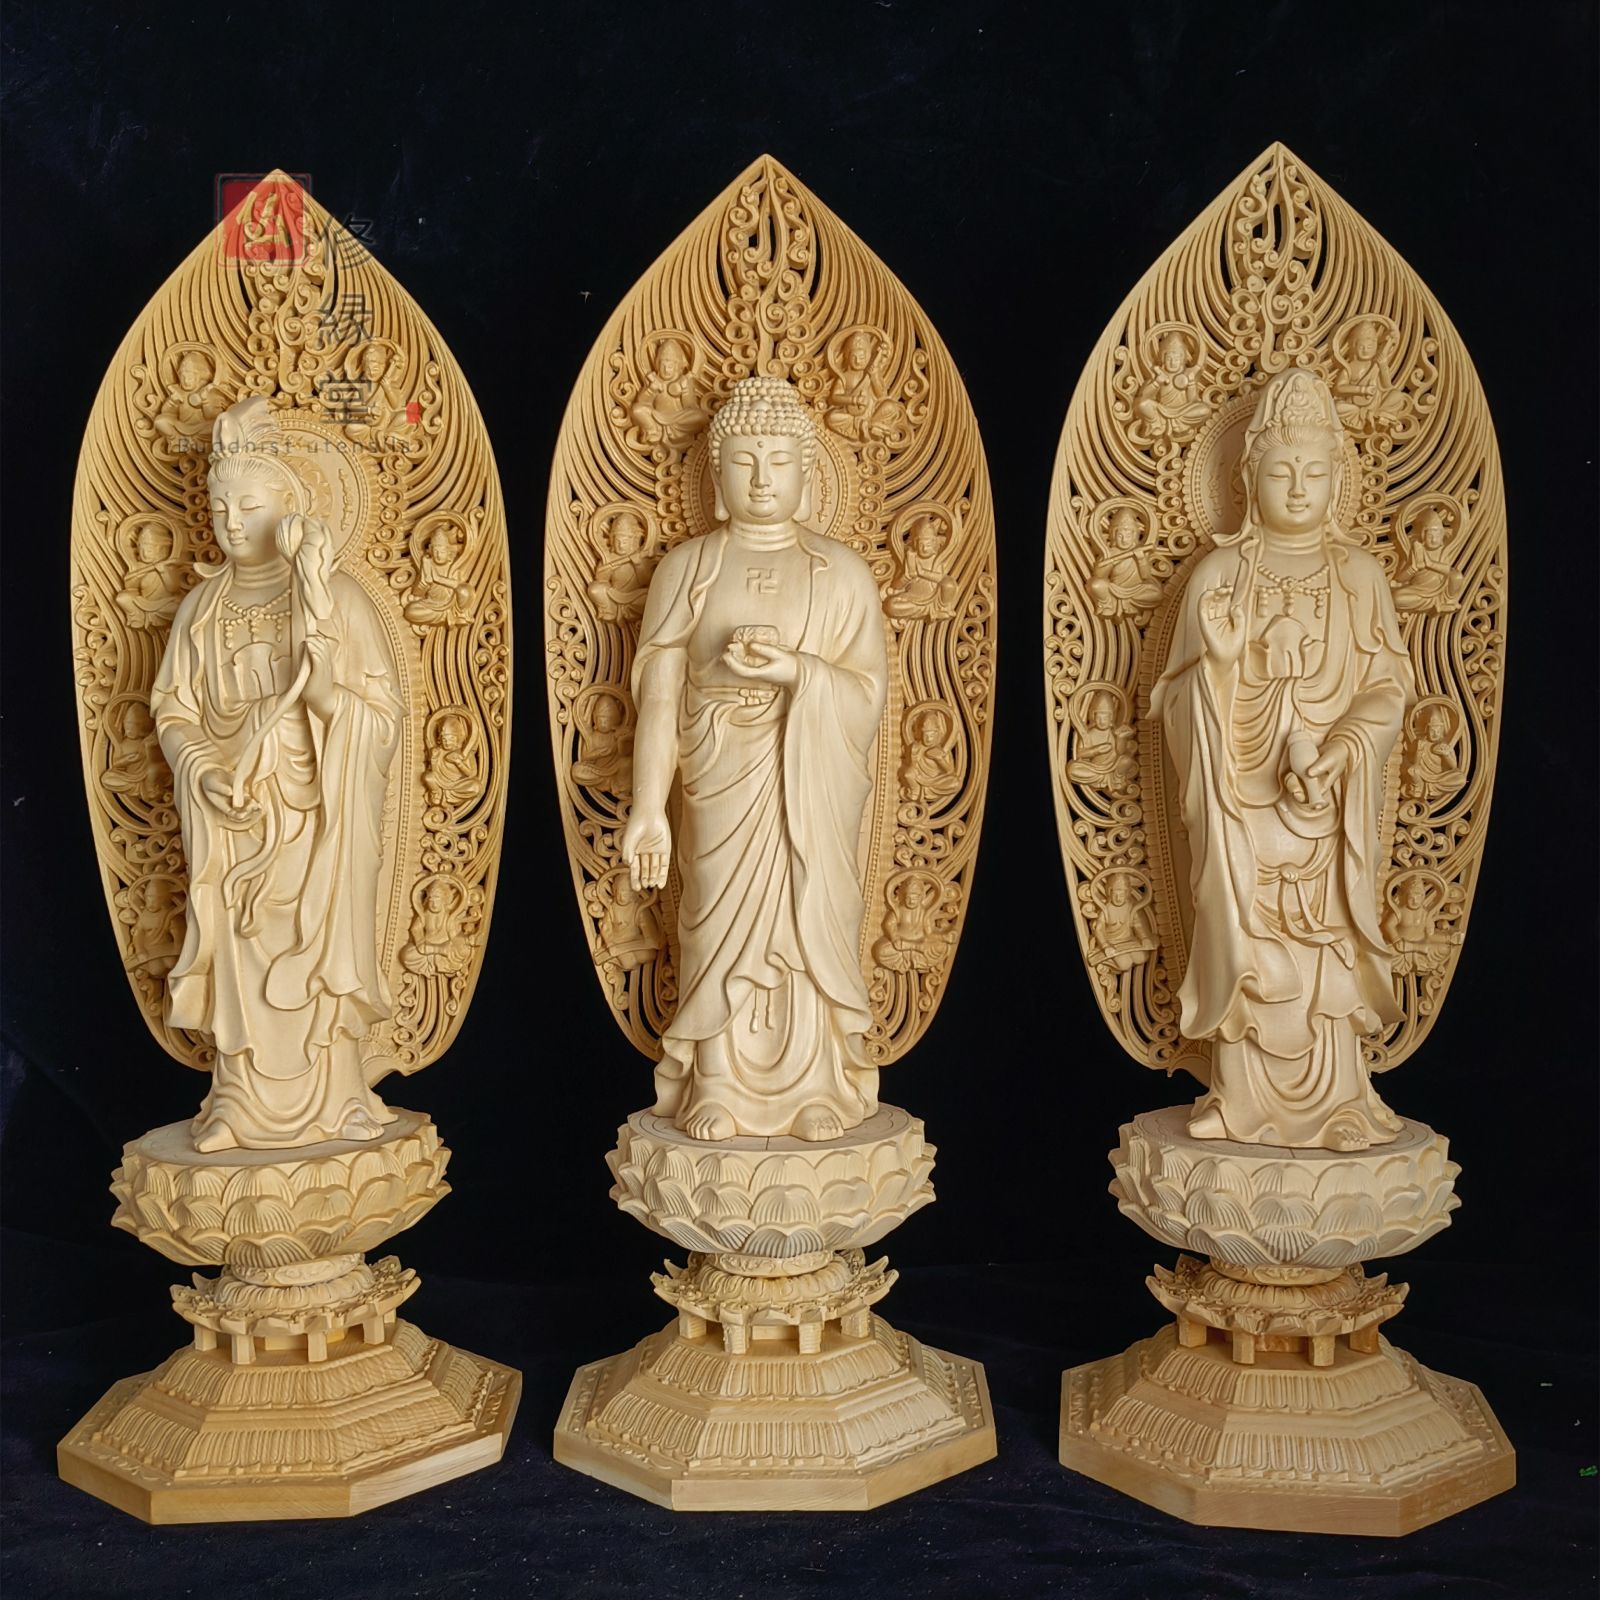 修縁堂】最高級 木彫り 仏像 阿弥陀三尊 彫刻 一刀彫 天然木檜材 仏教